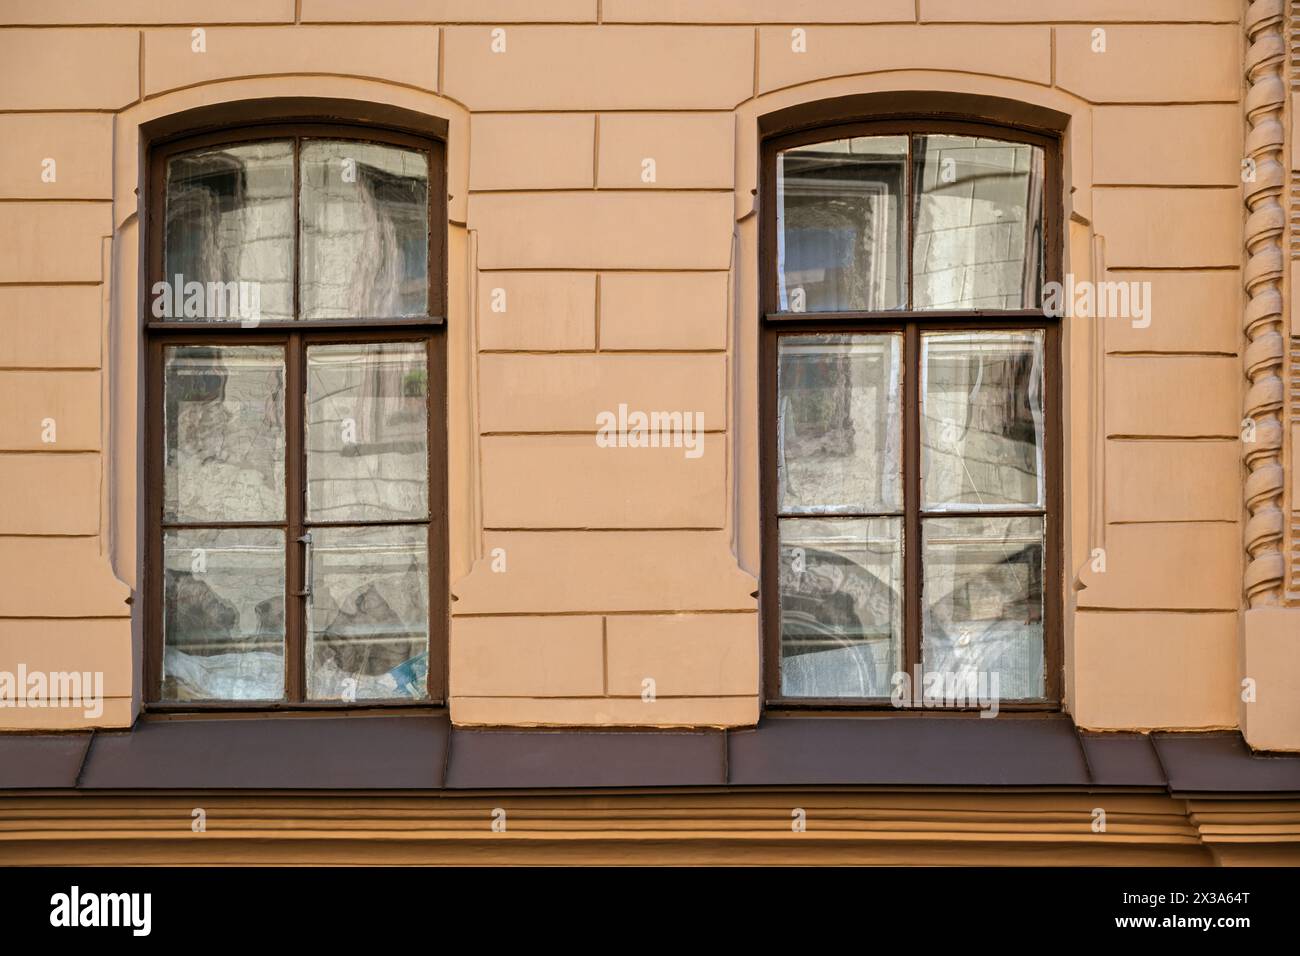 Due finestre rettangolari con vecchie cornici in legno marrone con riflessi sul vetro, contro una parete beige. Dalla serie Window of the World. Foto Stock